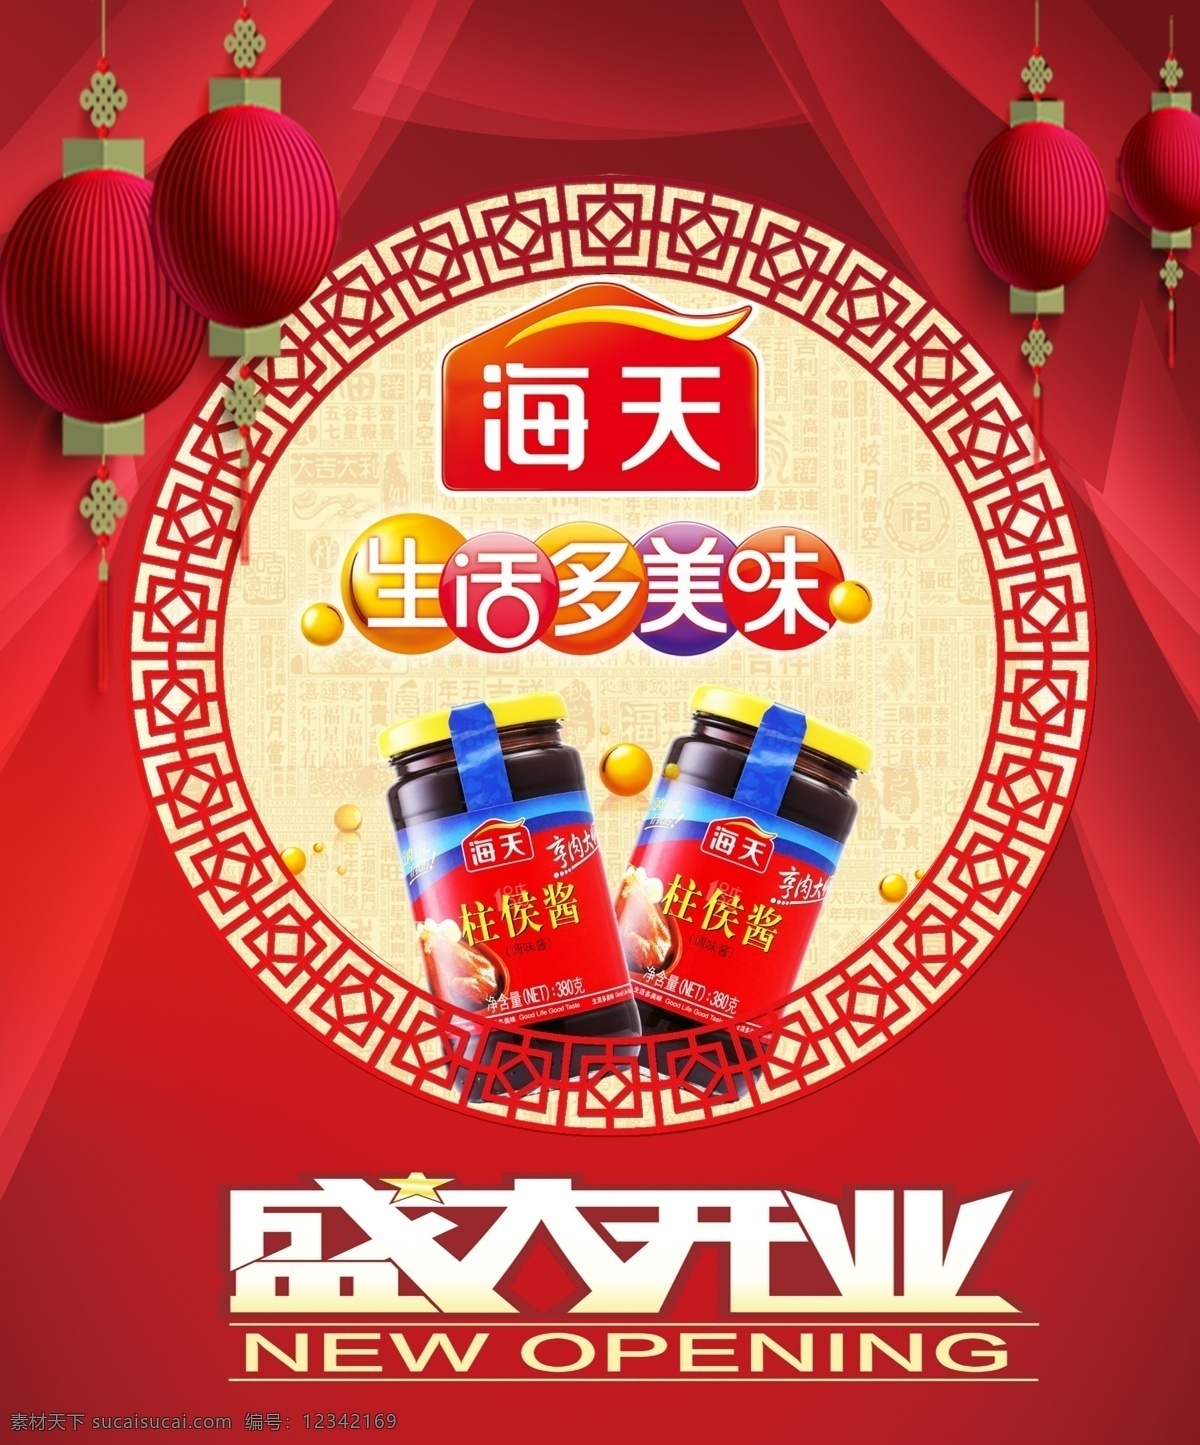 海天 生活多美味 盛大开业 海报 展板 红色 中国风 室内广告设计